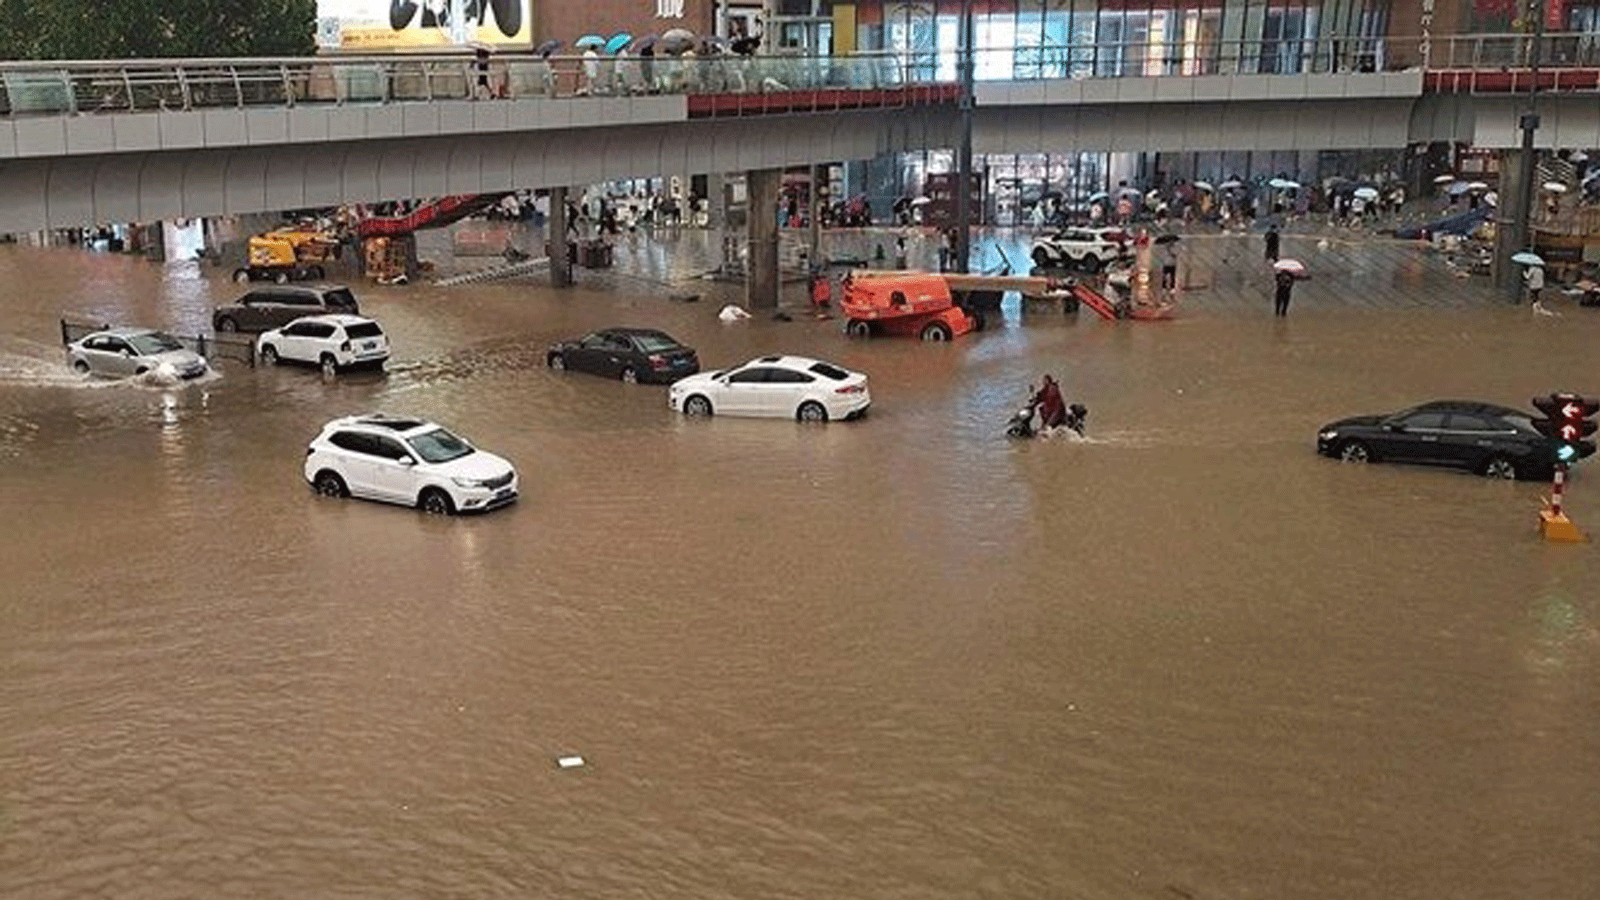 أشخاص عالقون في مياه الفيضانات على طول شارع بعد هطول أمطار غزيرة في مدينة تشنغتشو بمقاطعة خنان بوسط الصين. بتاريخ 20 تموز/ يوليو 2021